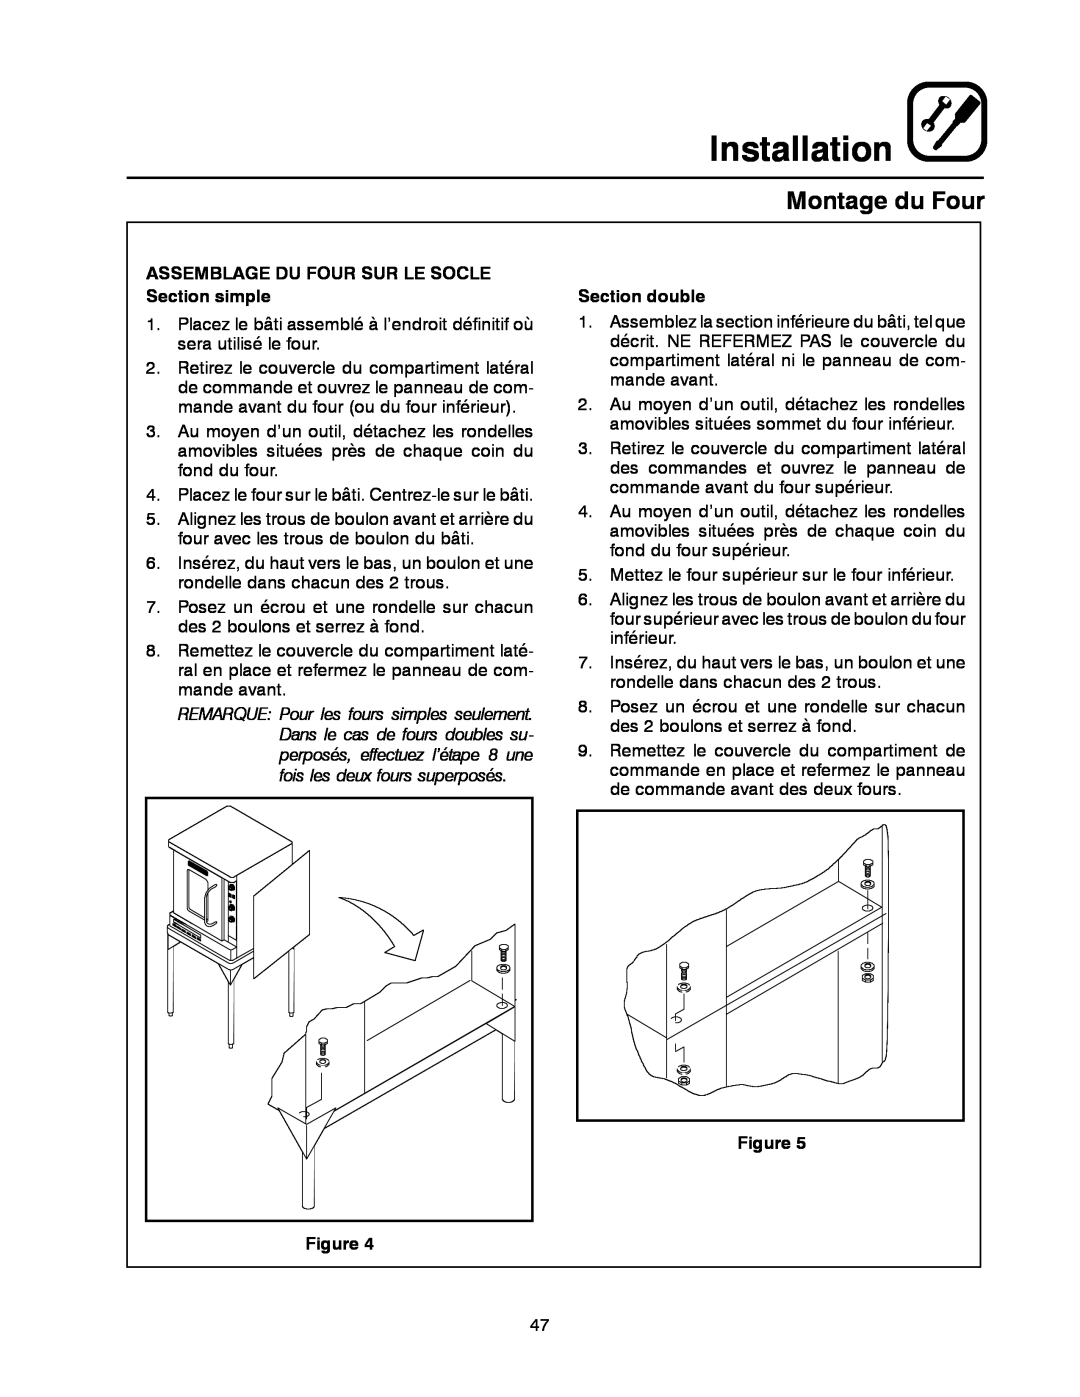 Blodgett DFG-50 manual Montage du Four, Installation, ASSEMBLAGE DU FOUR SUR LE SOCLE Section simple, Section double 